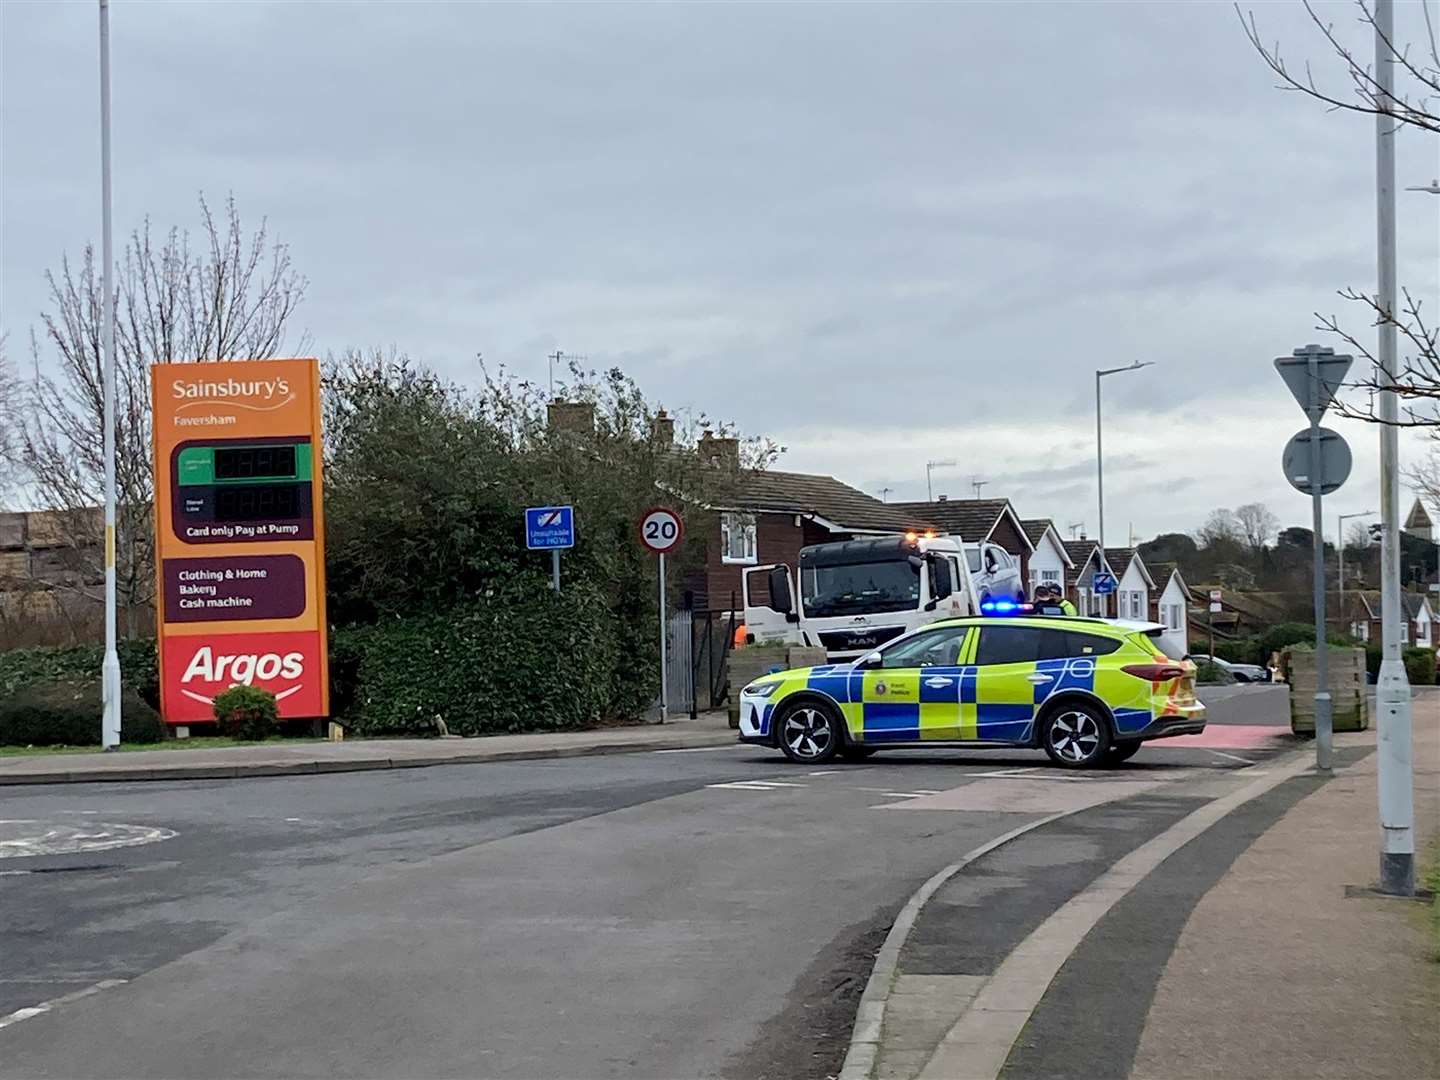 Bysingwood Road in Faversham was shut by police following a crash